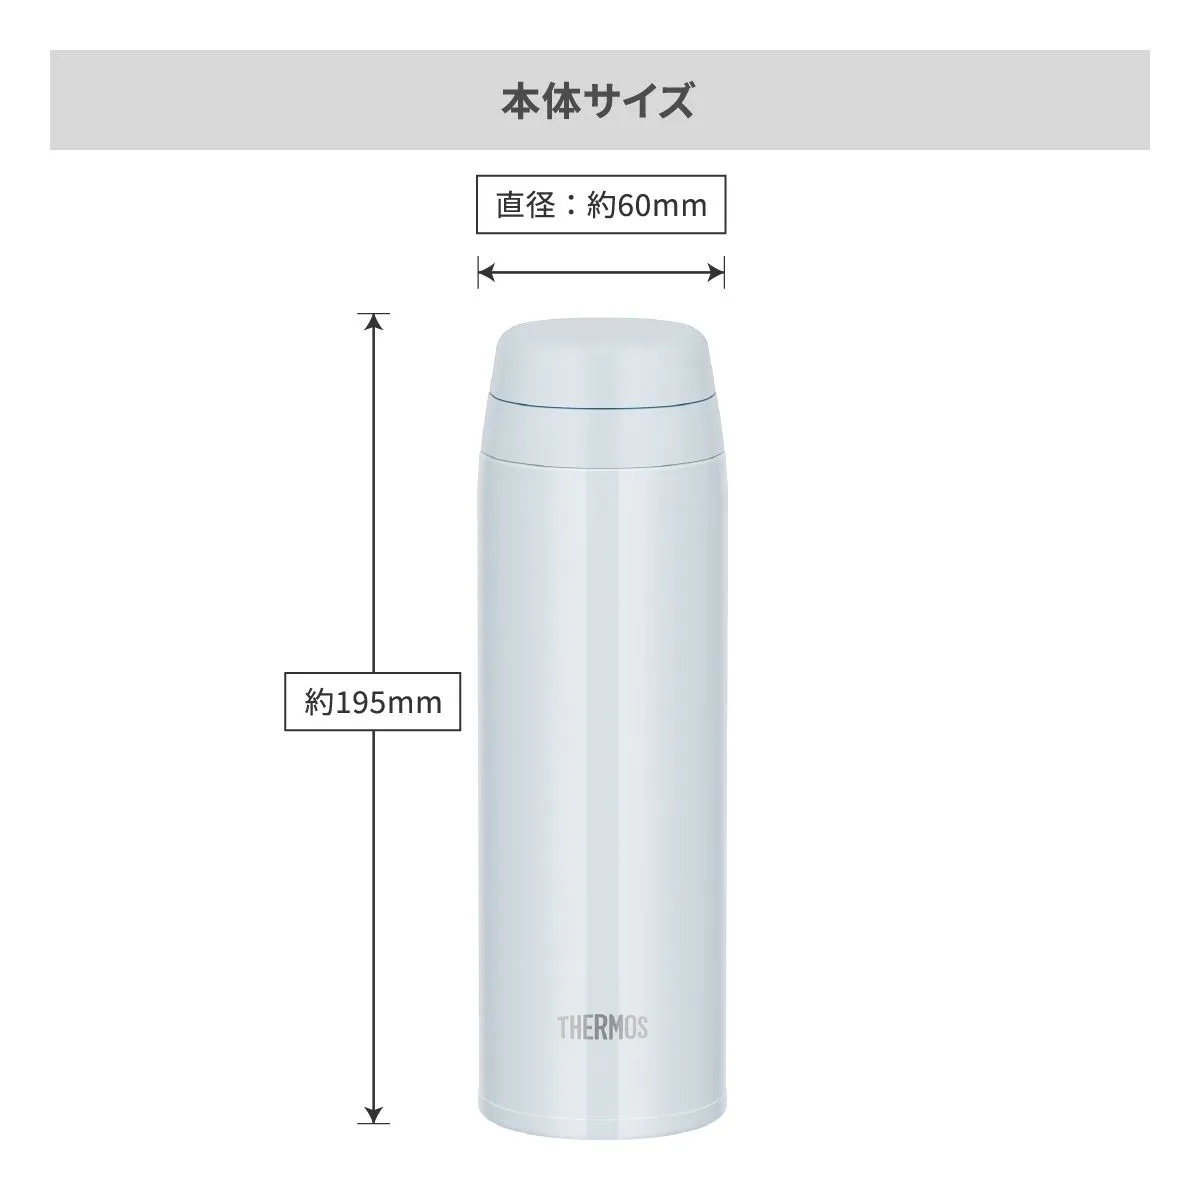 サーモス 真空断熱ケータイマグ 350ml【オリジナルステンレスボトル / レーザー彫刻】 画像6